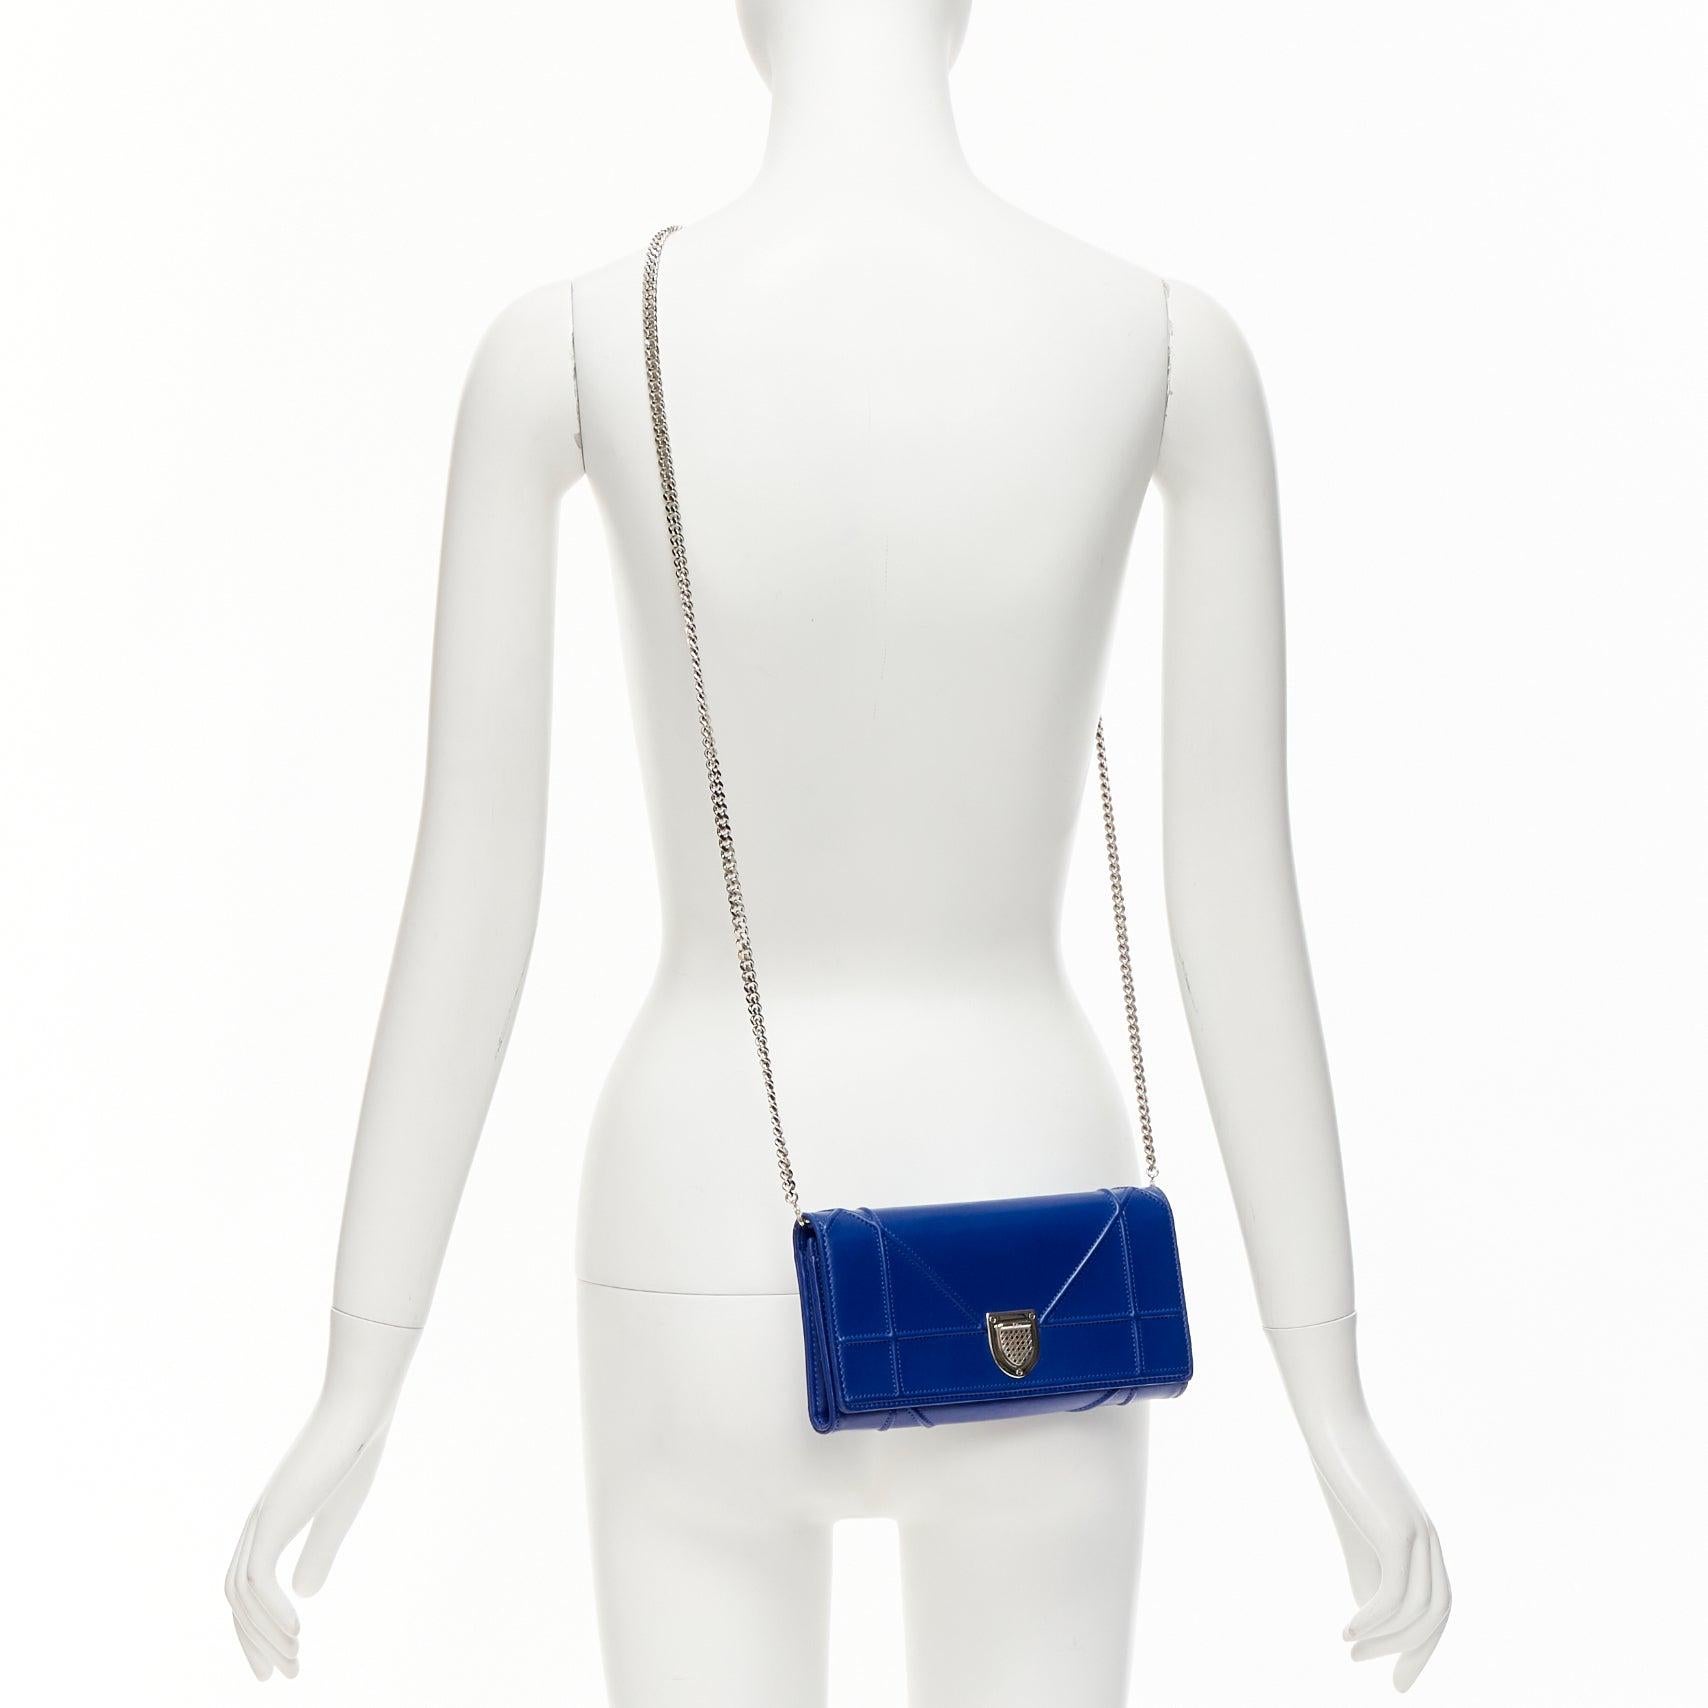 DIOR Diorama Cerulean Blaues gestepptes Crossbody Wallet auf Kette Clutch Tasche
Referenz: KYCG/A00031
Marke: Dior
Collection'S: Diorama
MATERIAL: Leder
Farbe: Blau, Silber
Muster: Solide
Verschluss: Druckknöpfe
Innenfutter: Blaues Leder
Hergestellt